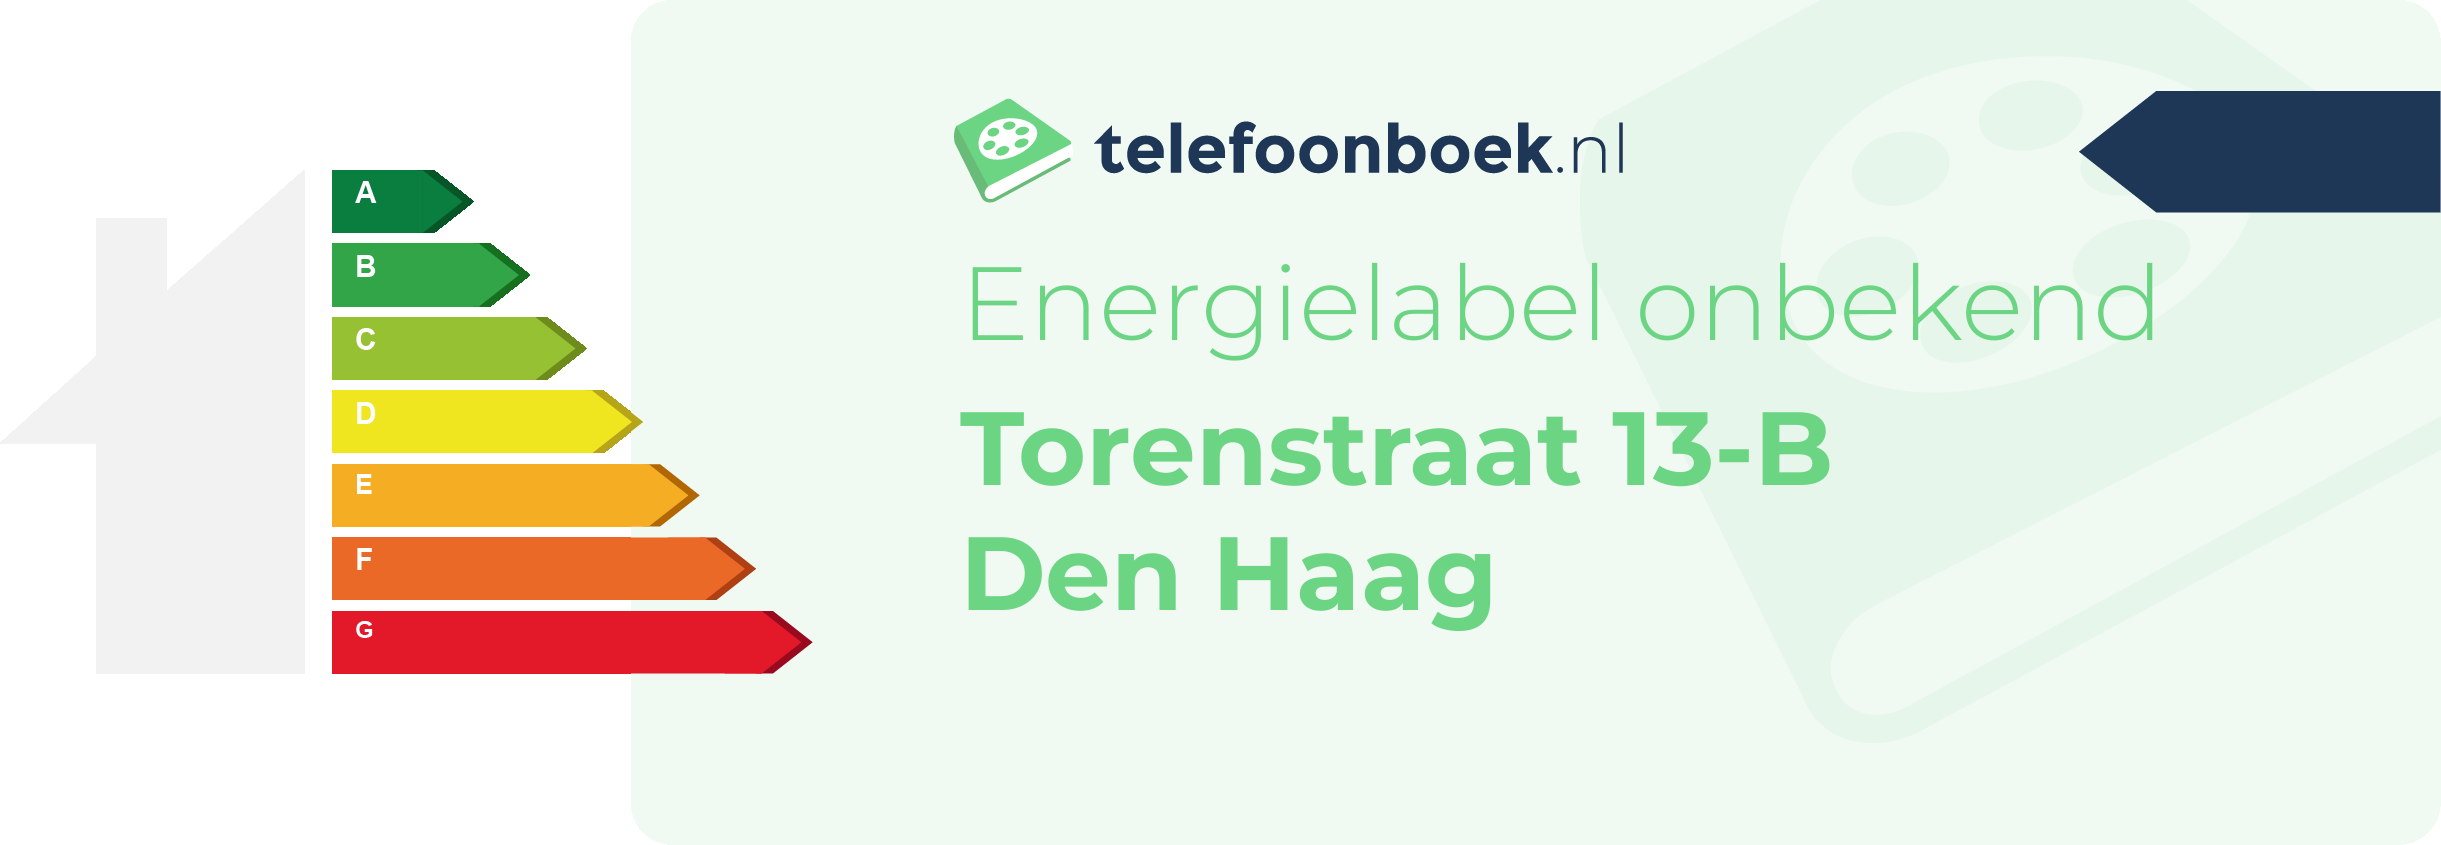 Energielabel Torenstraat 13-B Den Haag